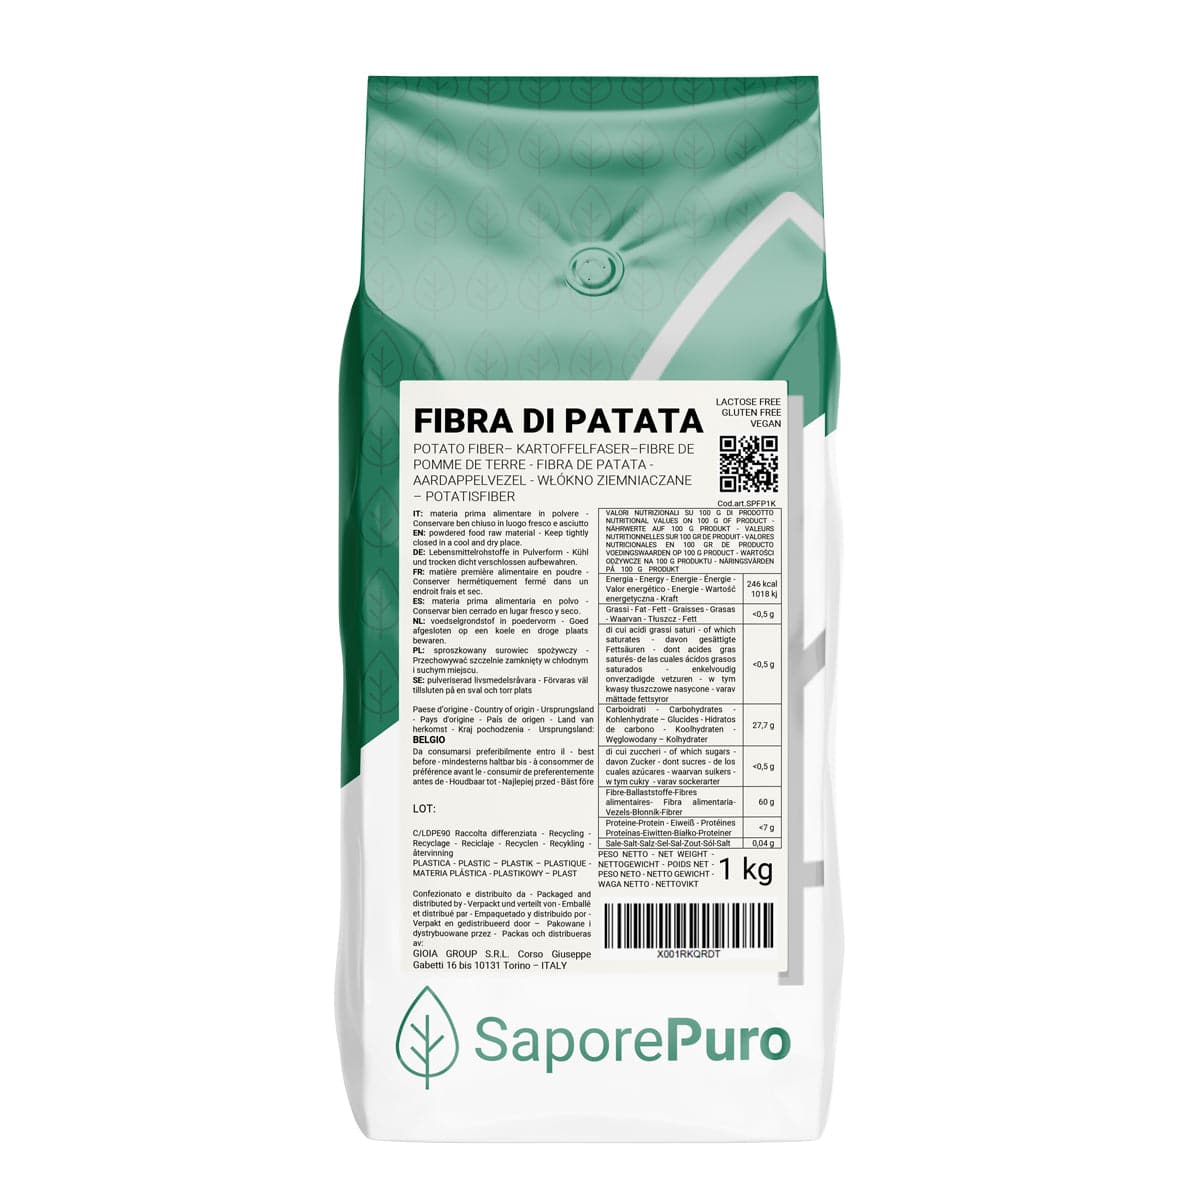 Fibra di Patata - 1kg - Gluten Free - Origine Belgio- ideale per panificazione e prodotti da forno - SaporePuro